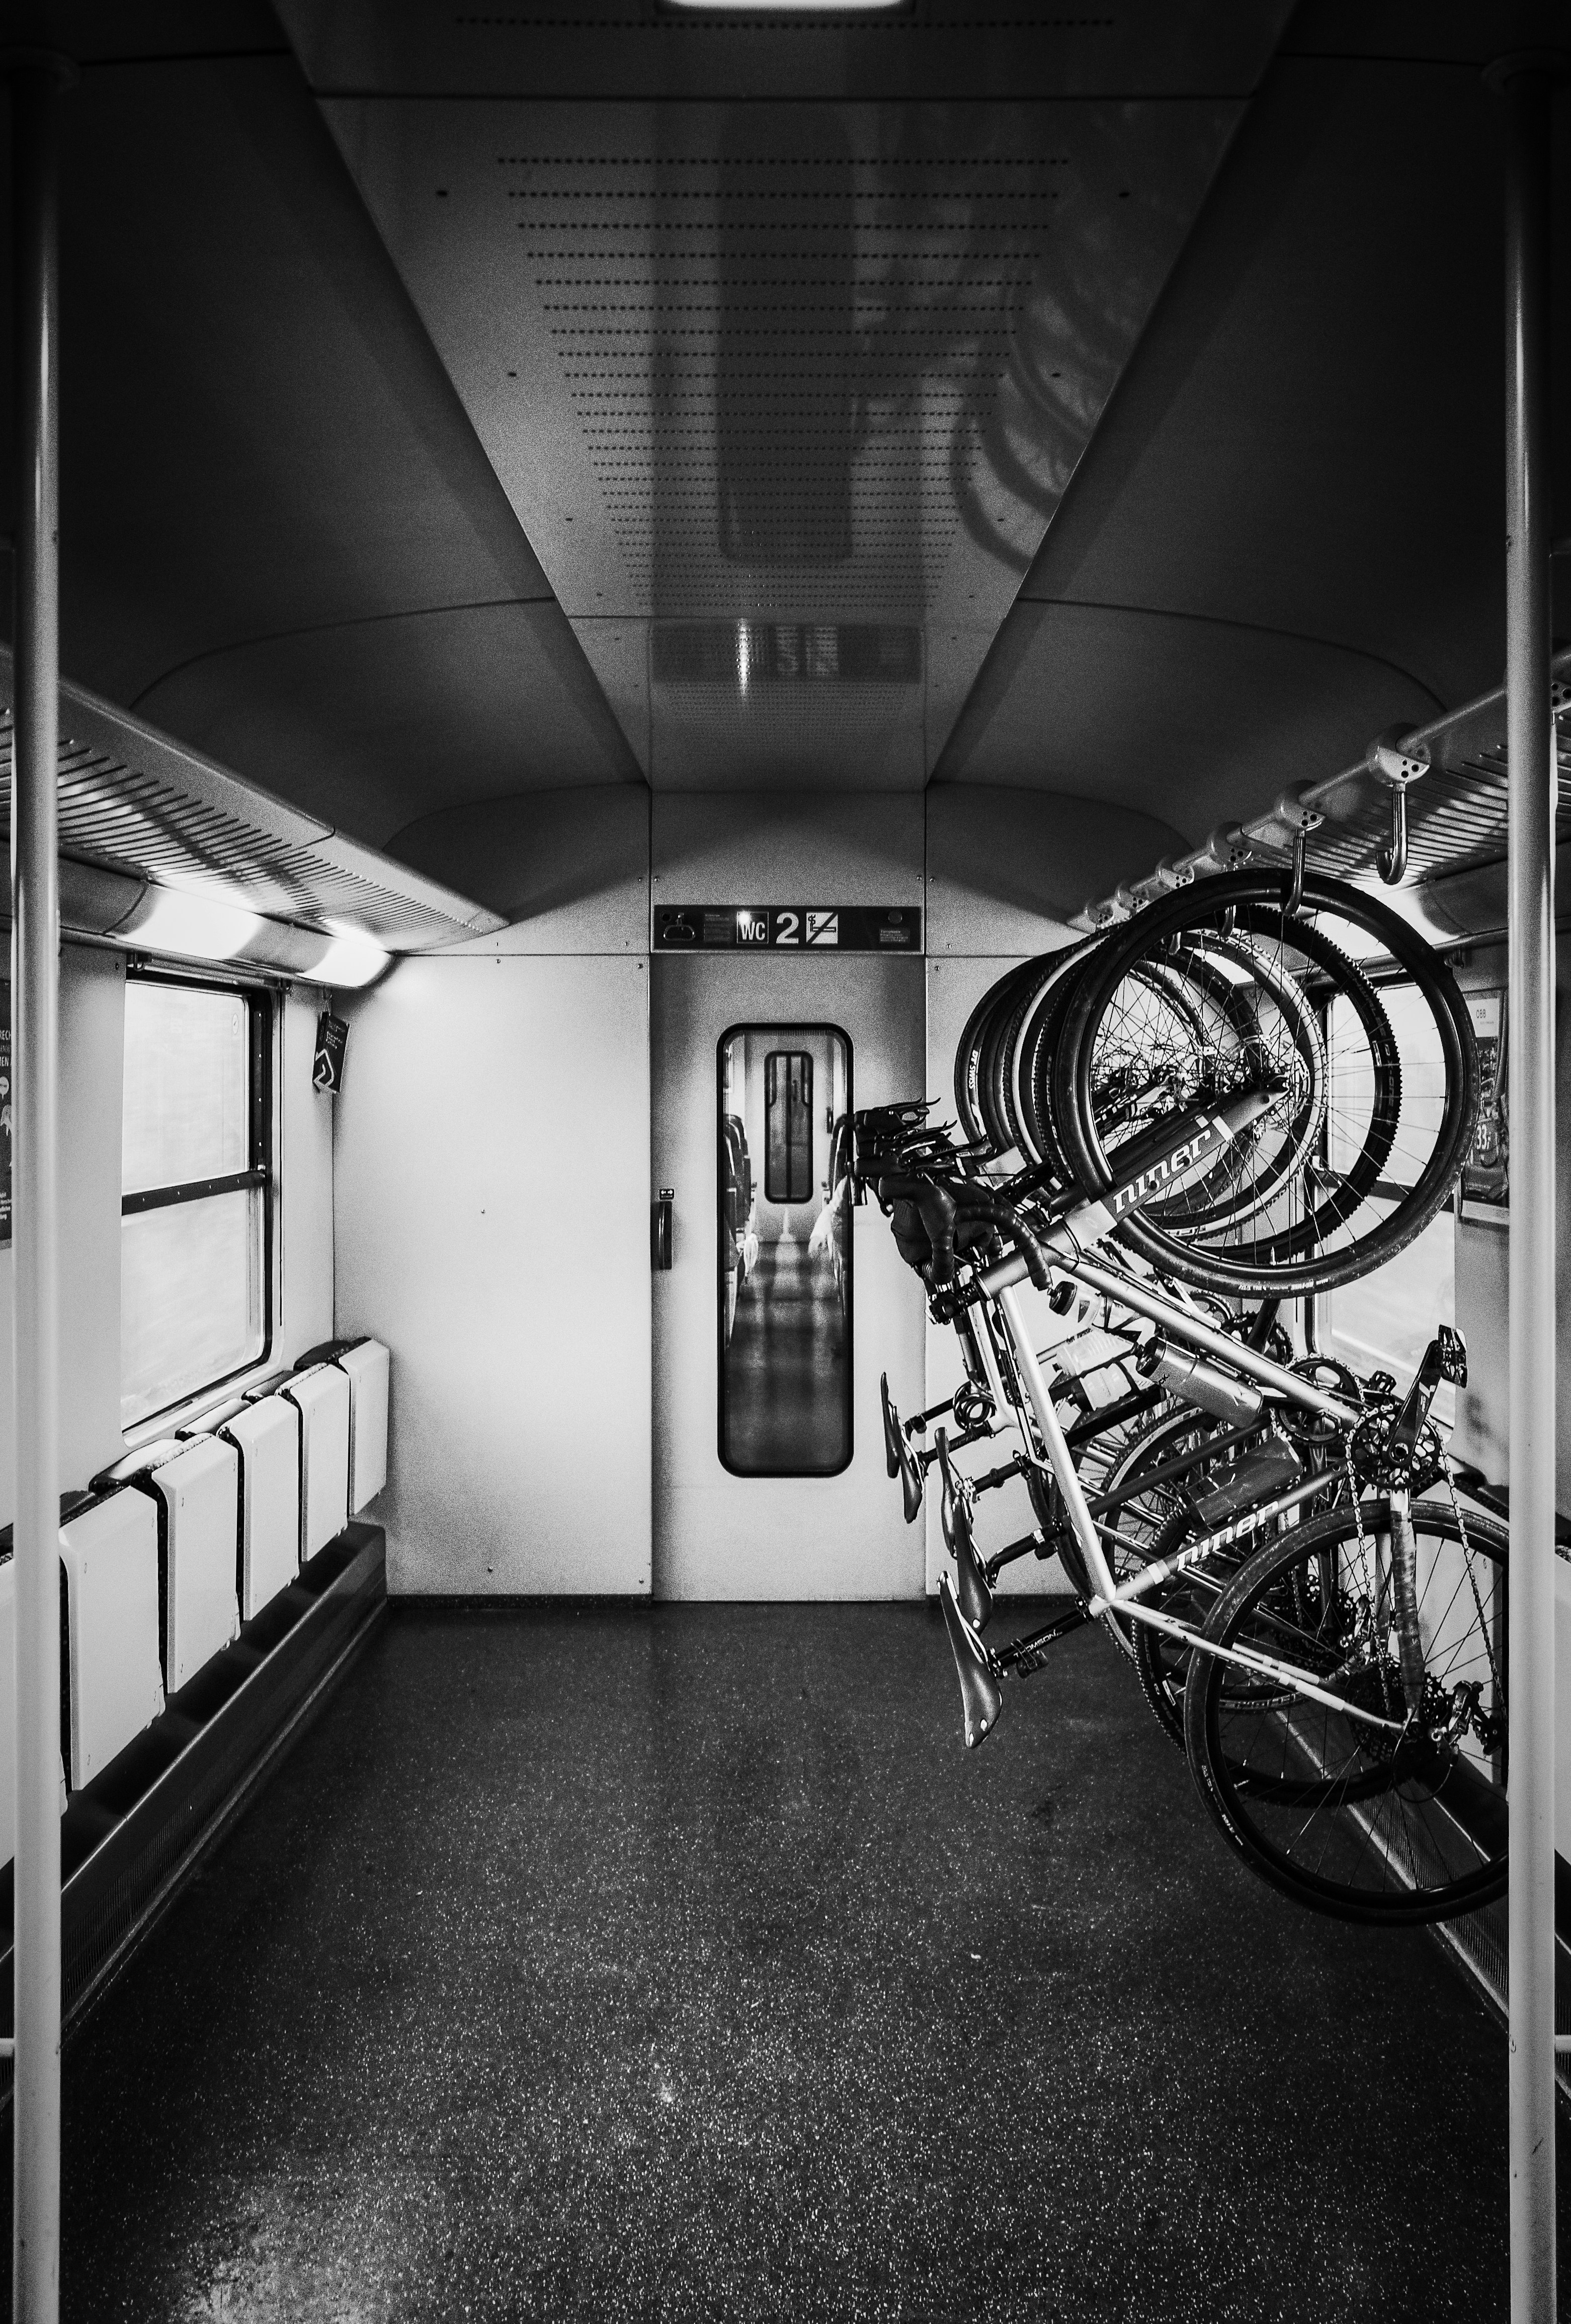 Cover Image for Organiser son voyage à vélo + train : le guide complet par DolceVia